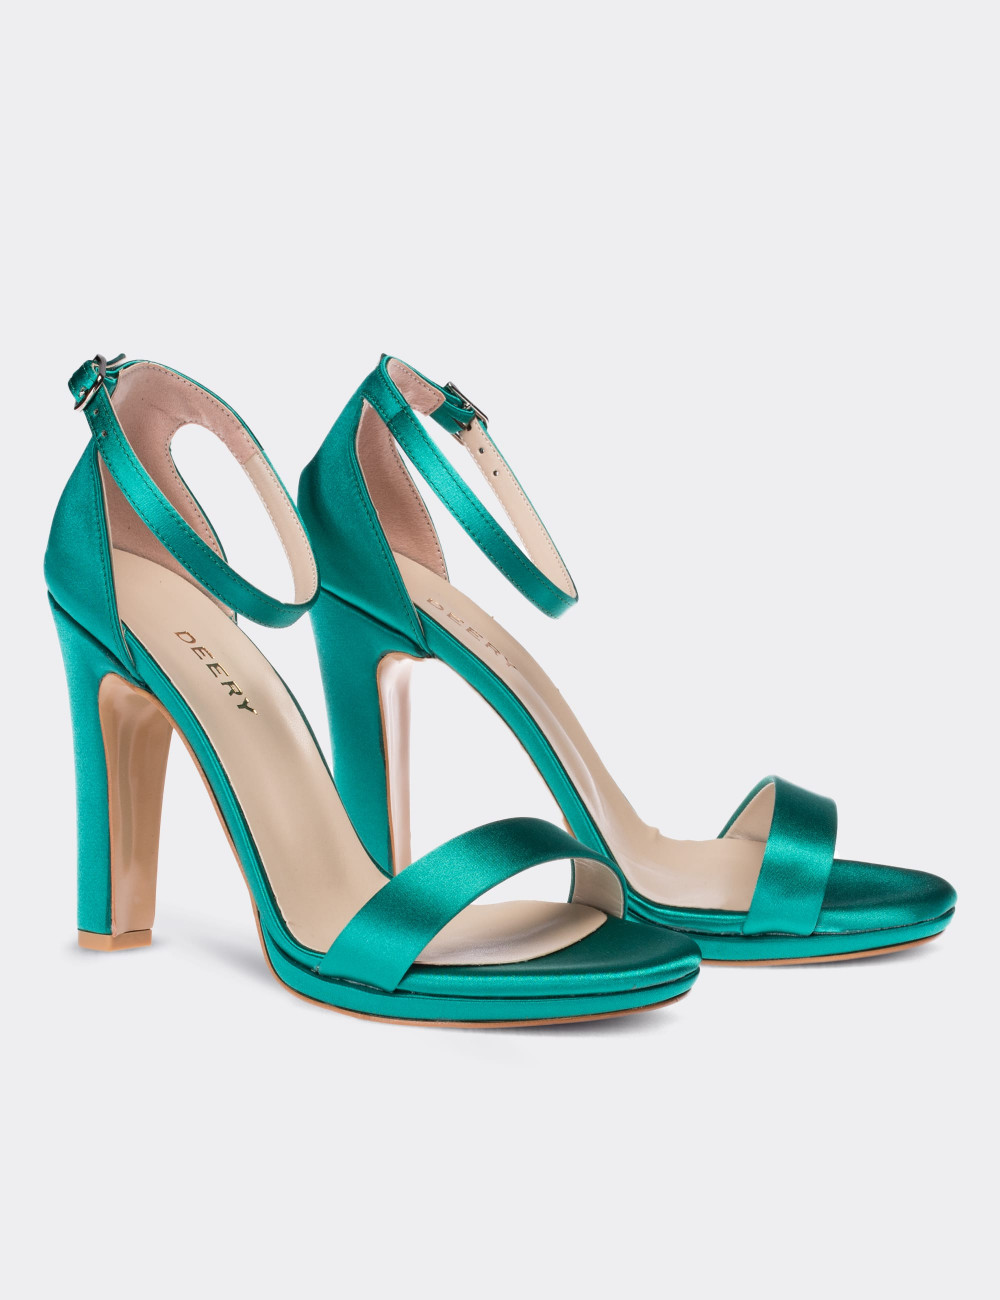 Yeşil Saten Topuklu Kadın Ayakkabı - C0855ZYSLM01